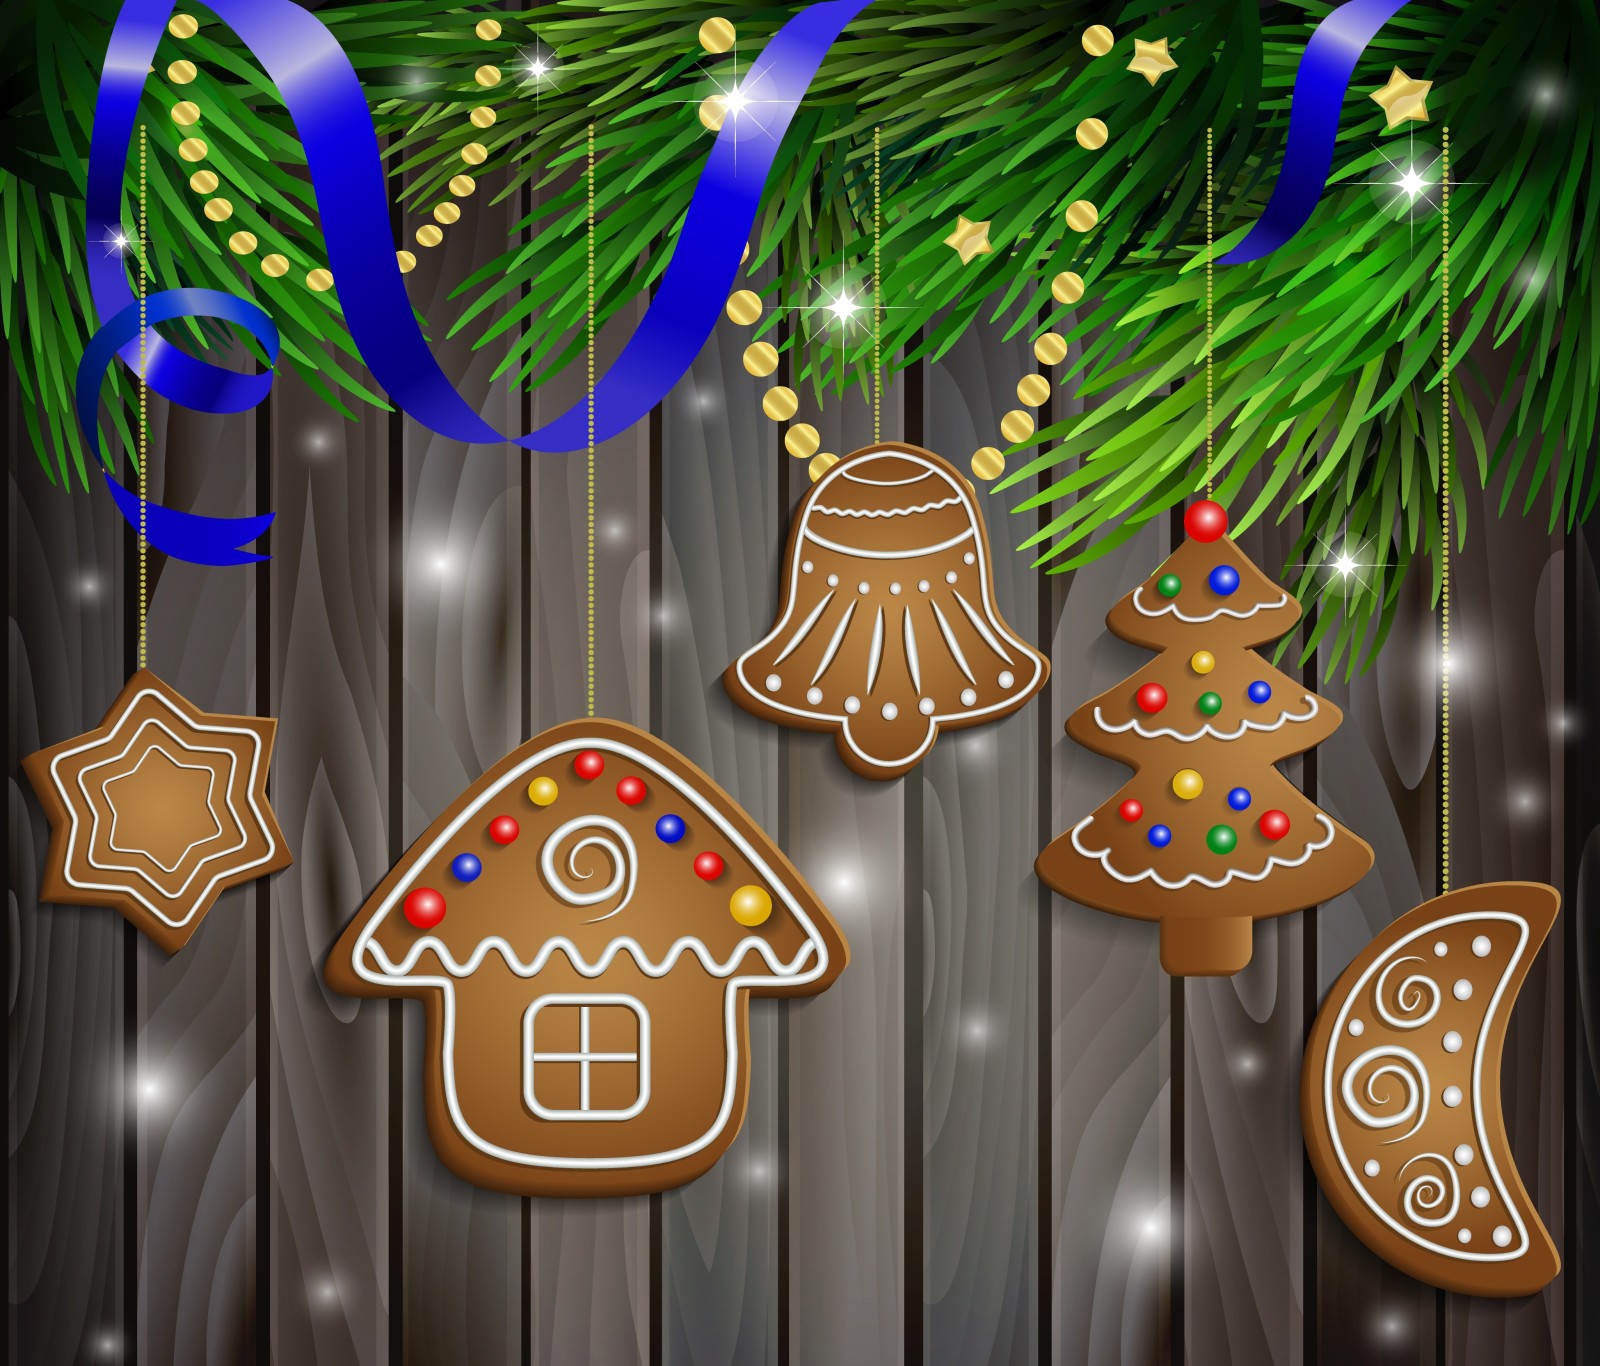 tuyết, những quả bóng, Năm mới, Giáng sinh, trang trí, Chúc mừng, Giáng sinh, bánh quy